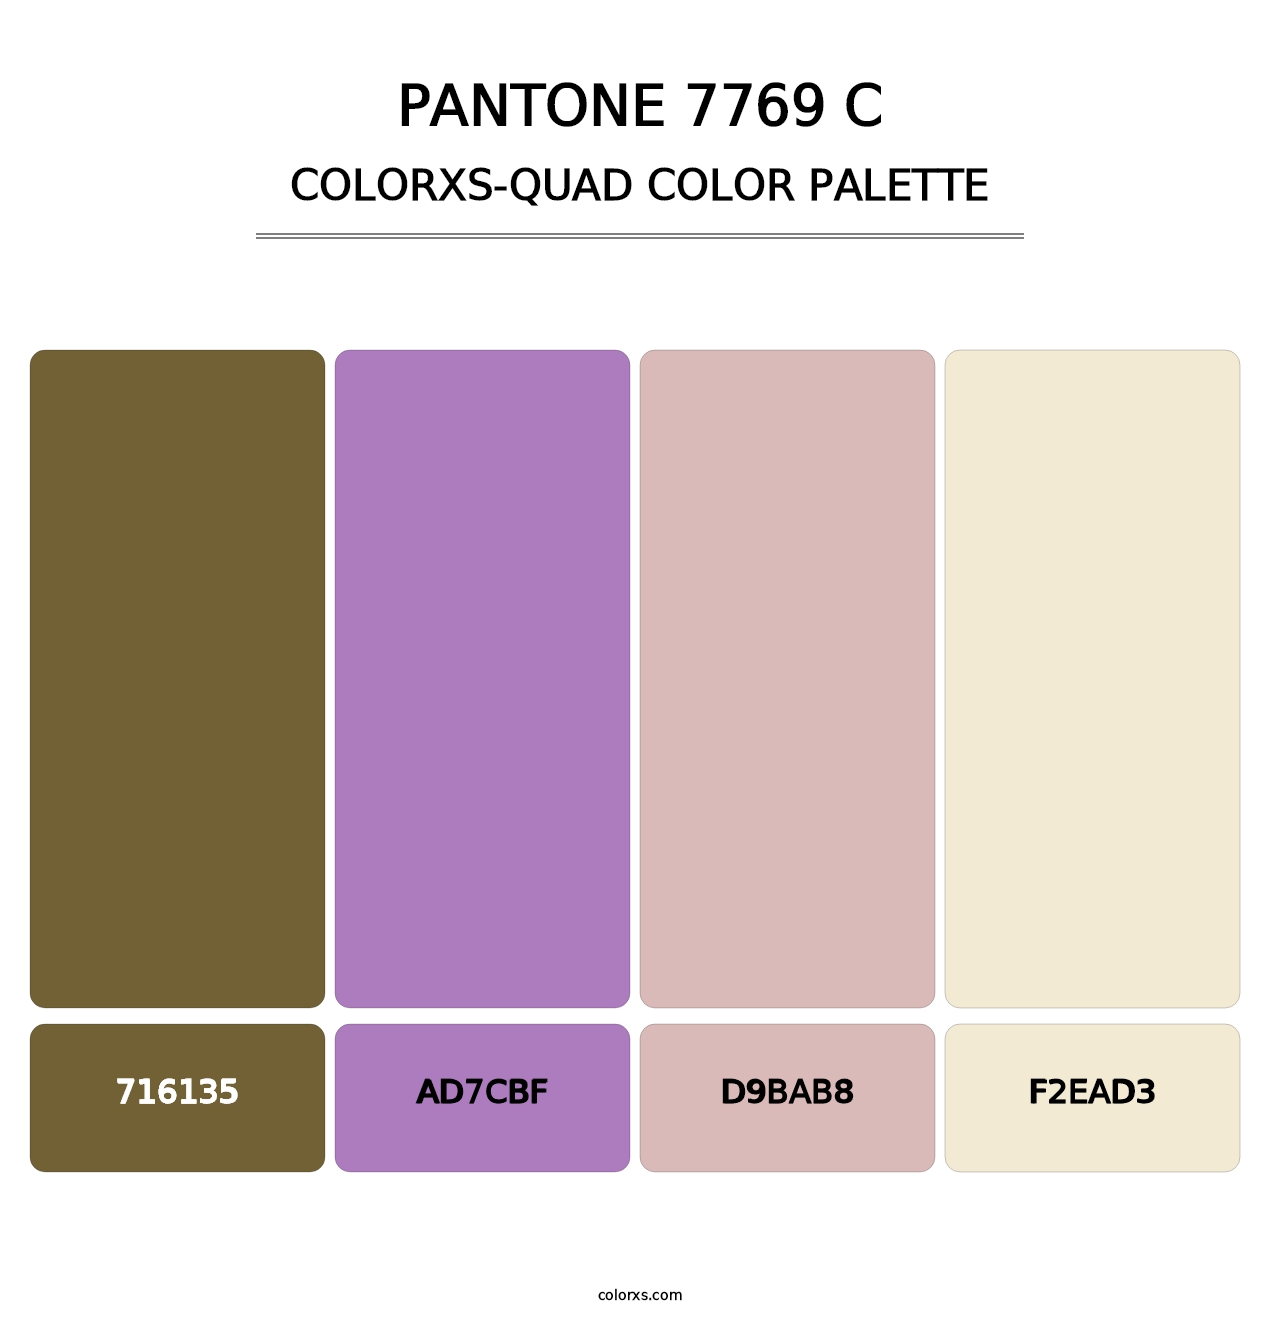 PANTONE 7769 C - Colorxs Quad Palette